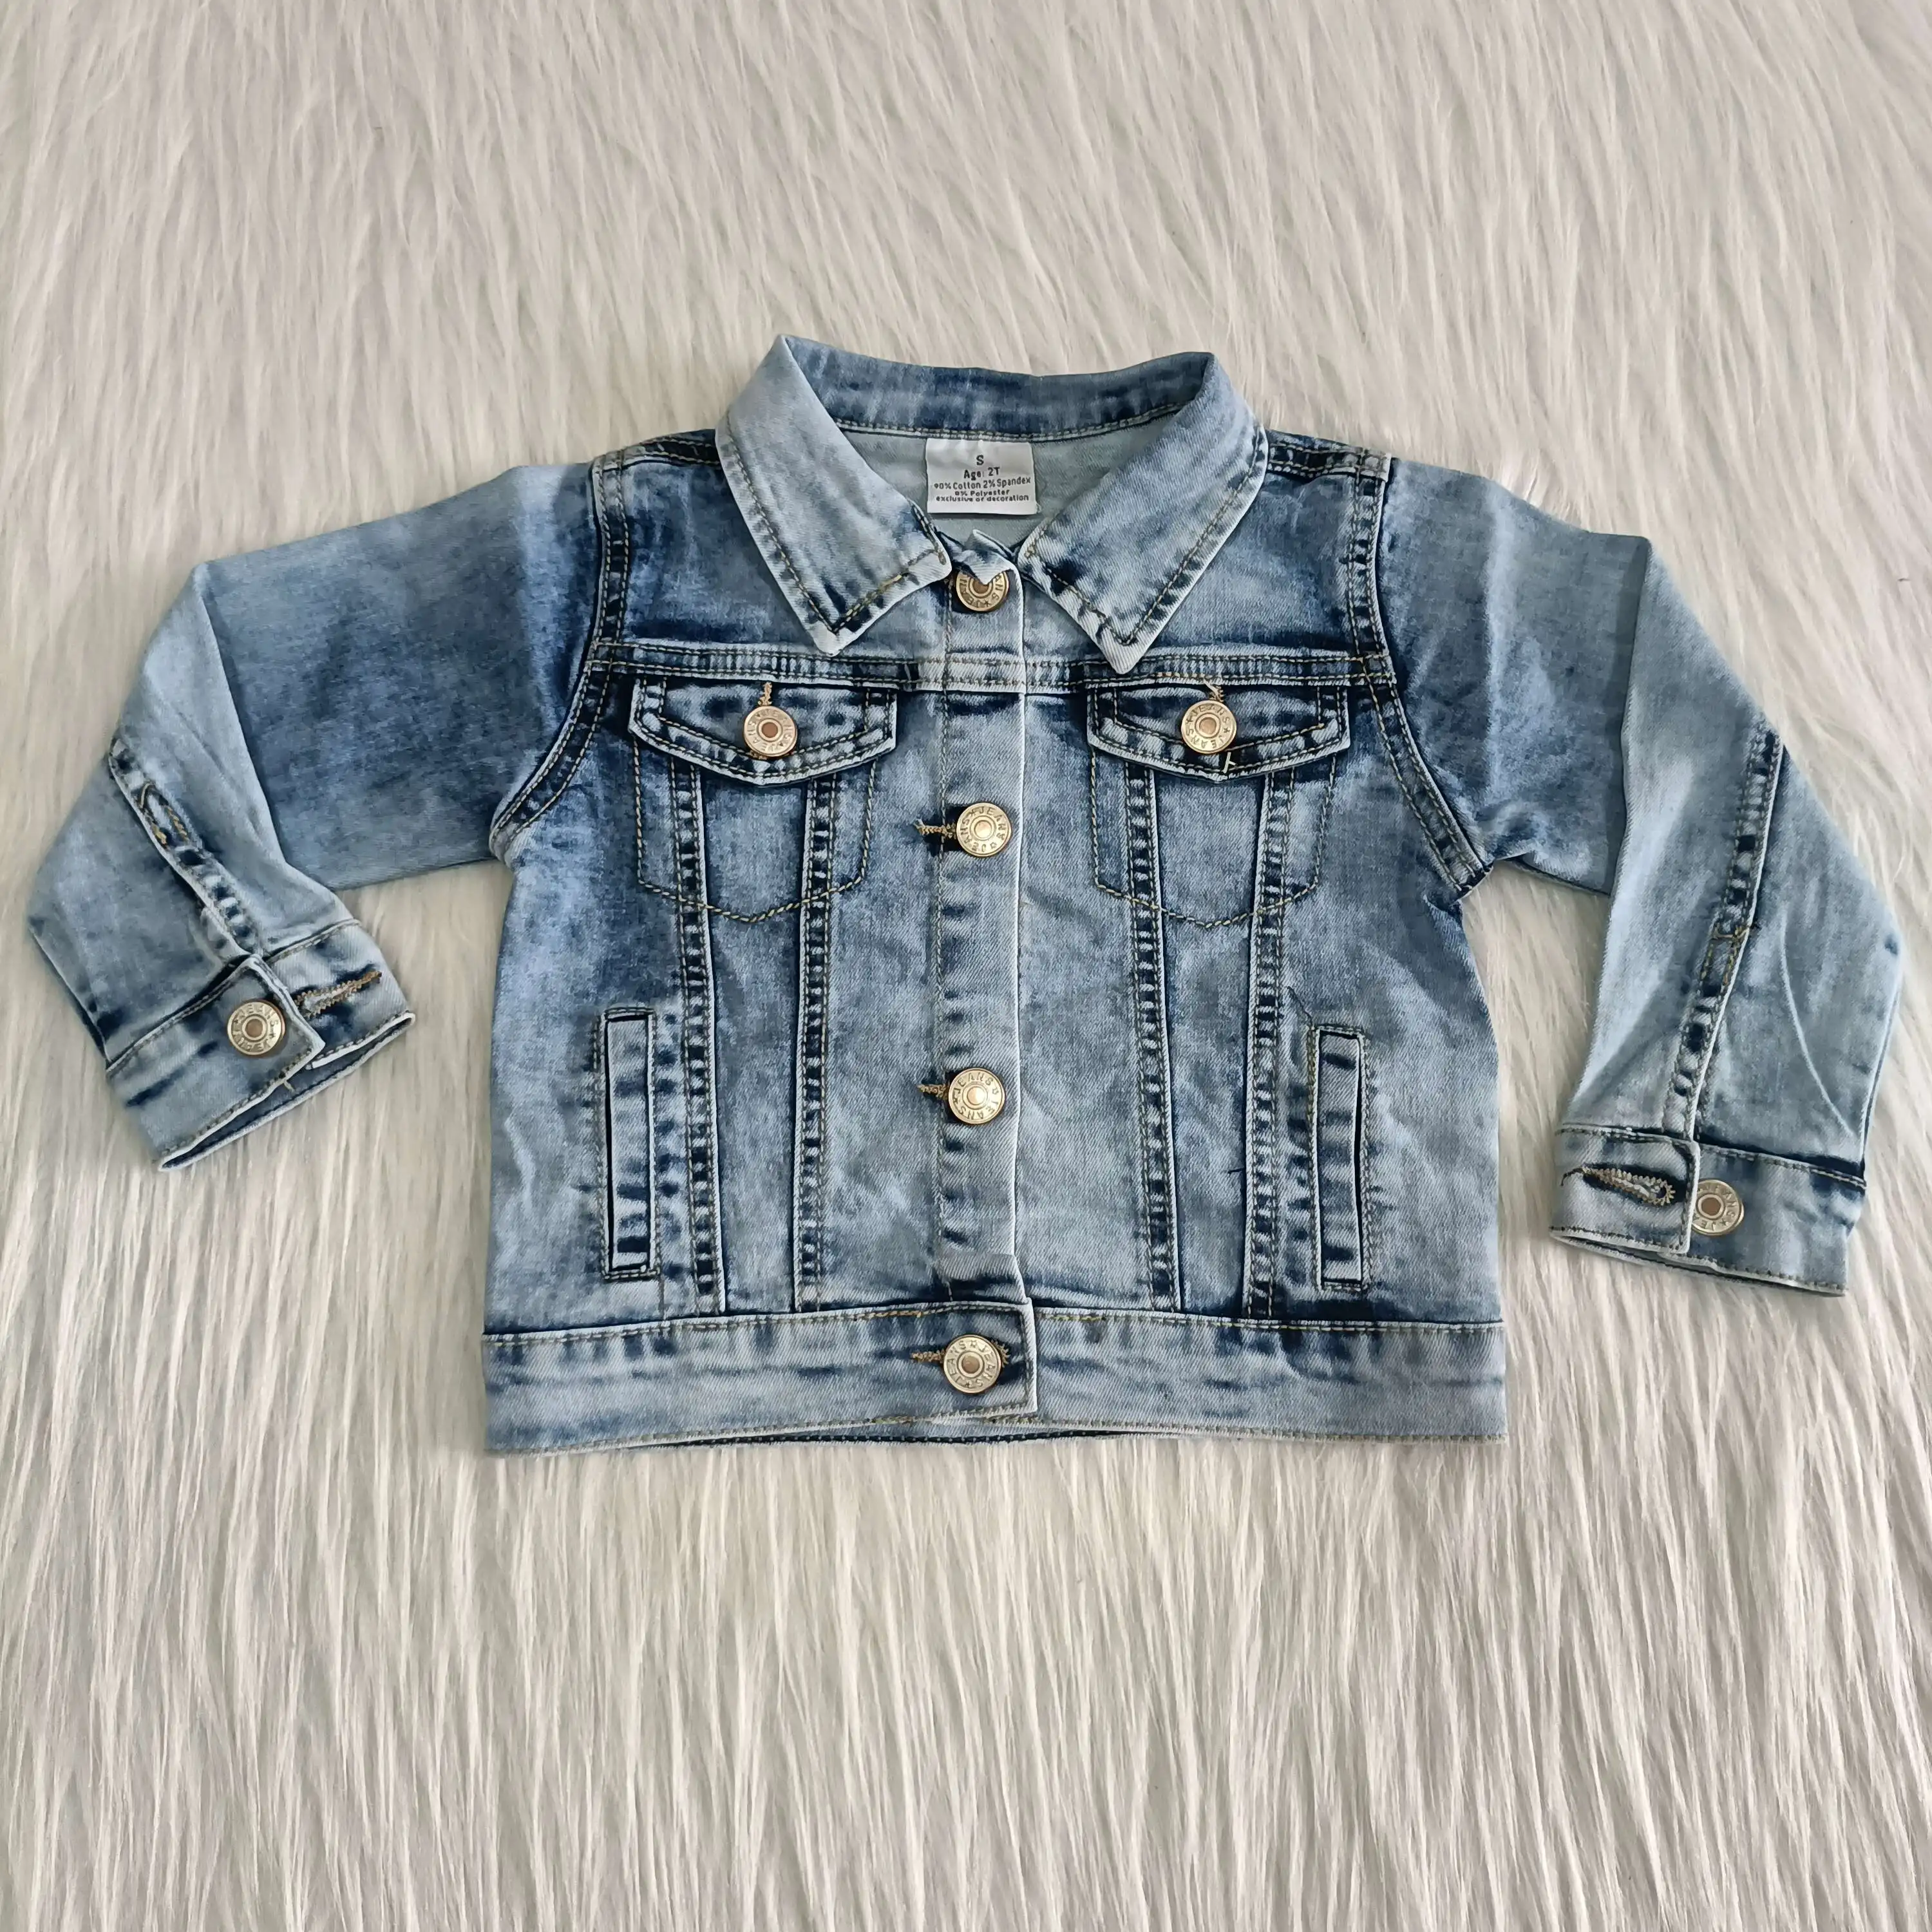 Girls Denim jacket ex chainstore sizes 18 months to 7 years